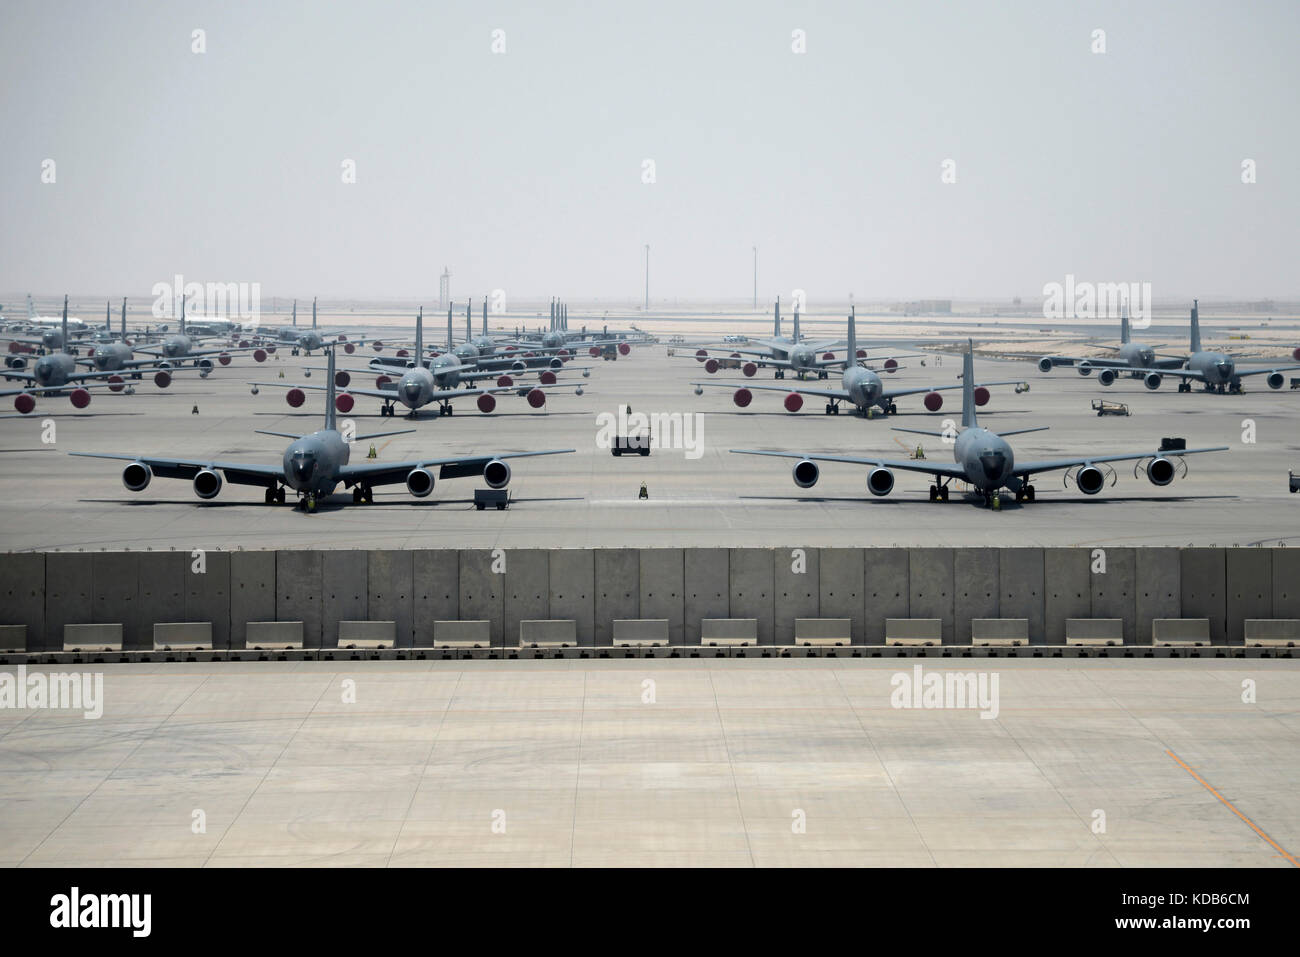 Al Udeid Air Base, Qatar on Aug. 19, 2017. Stock Photo